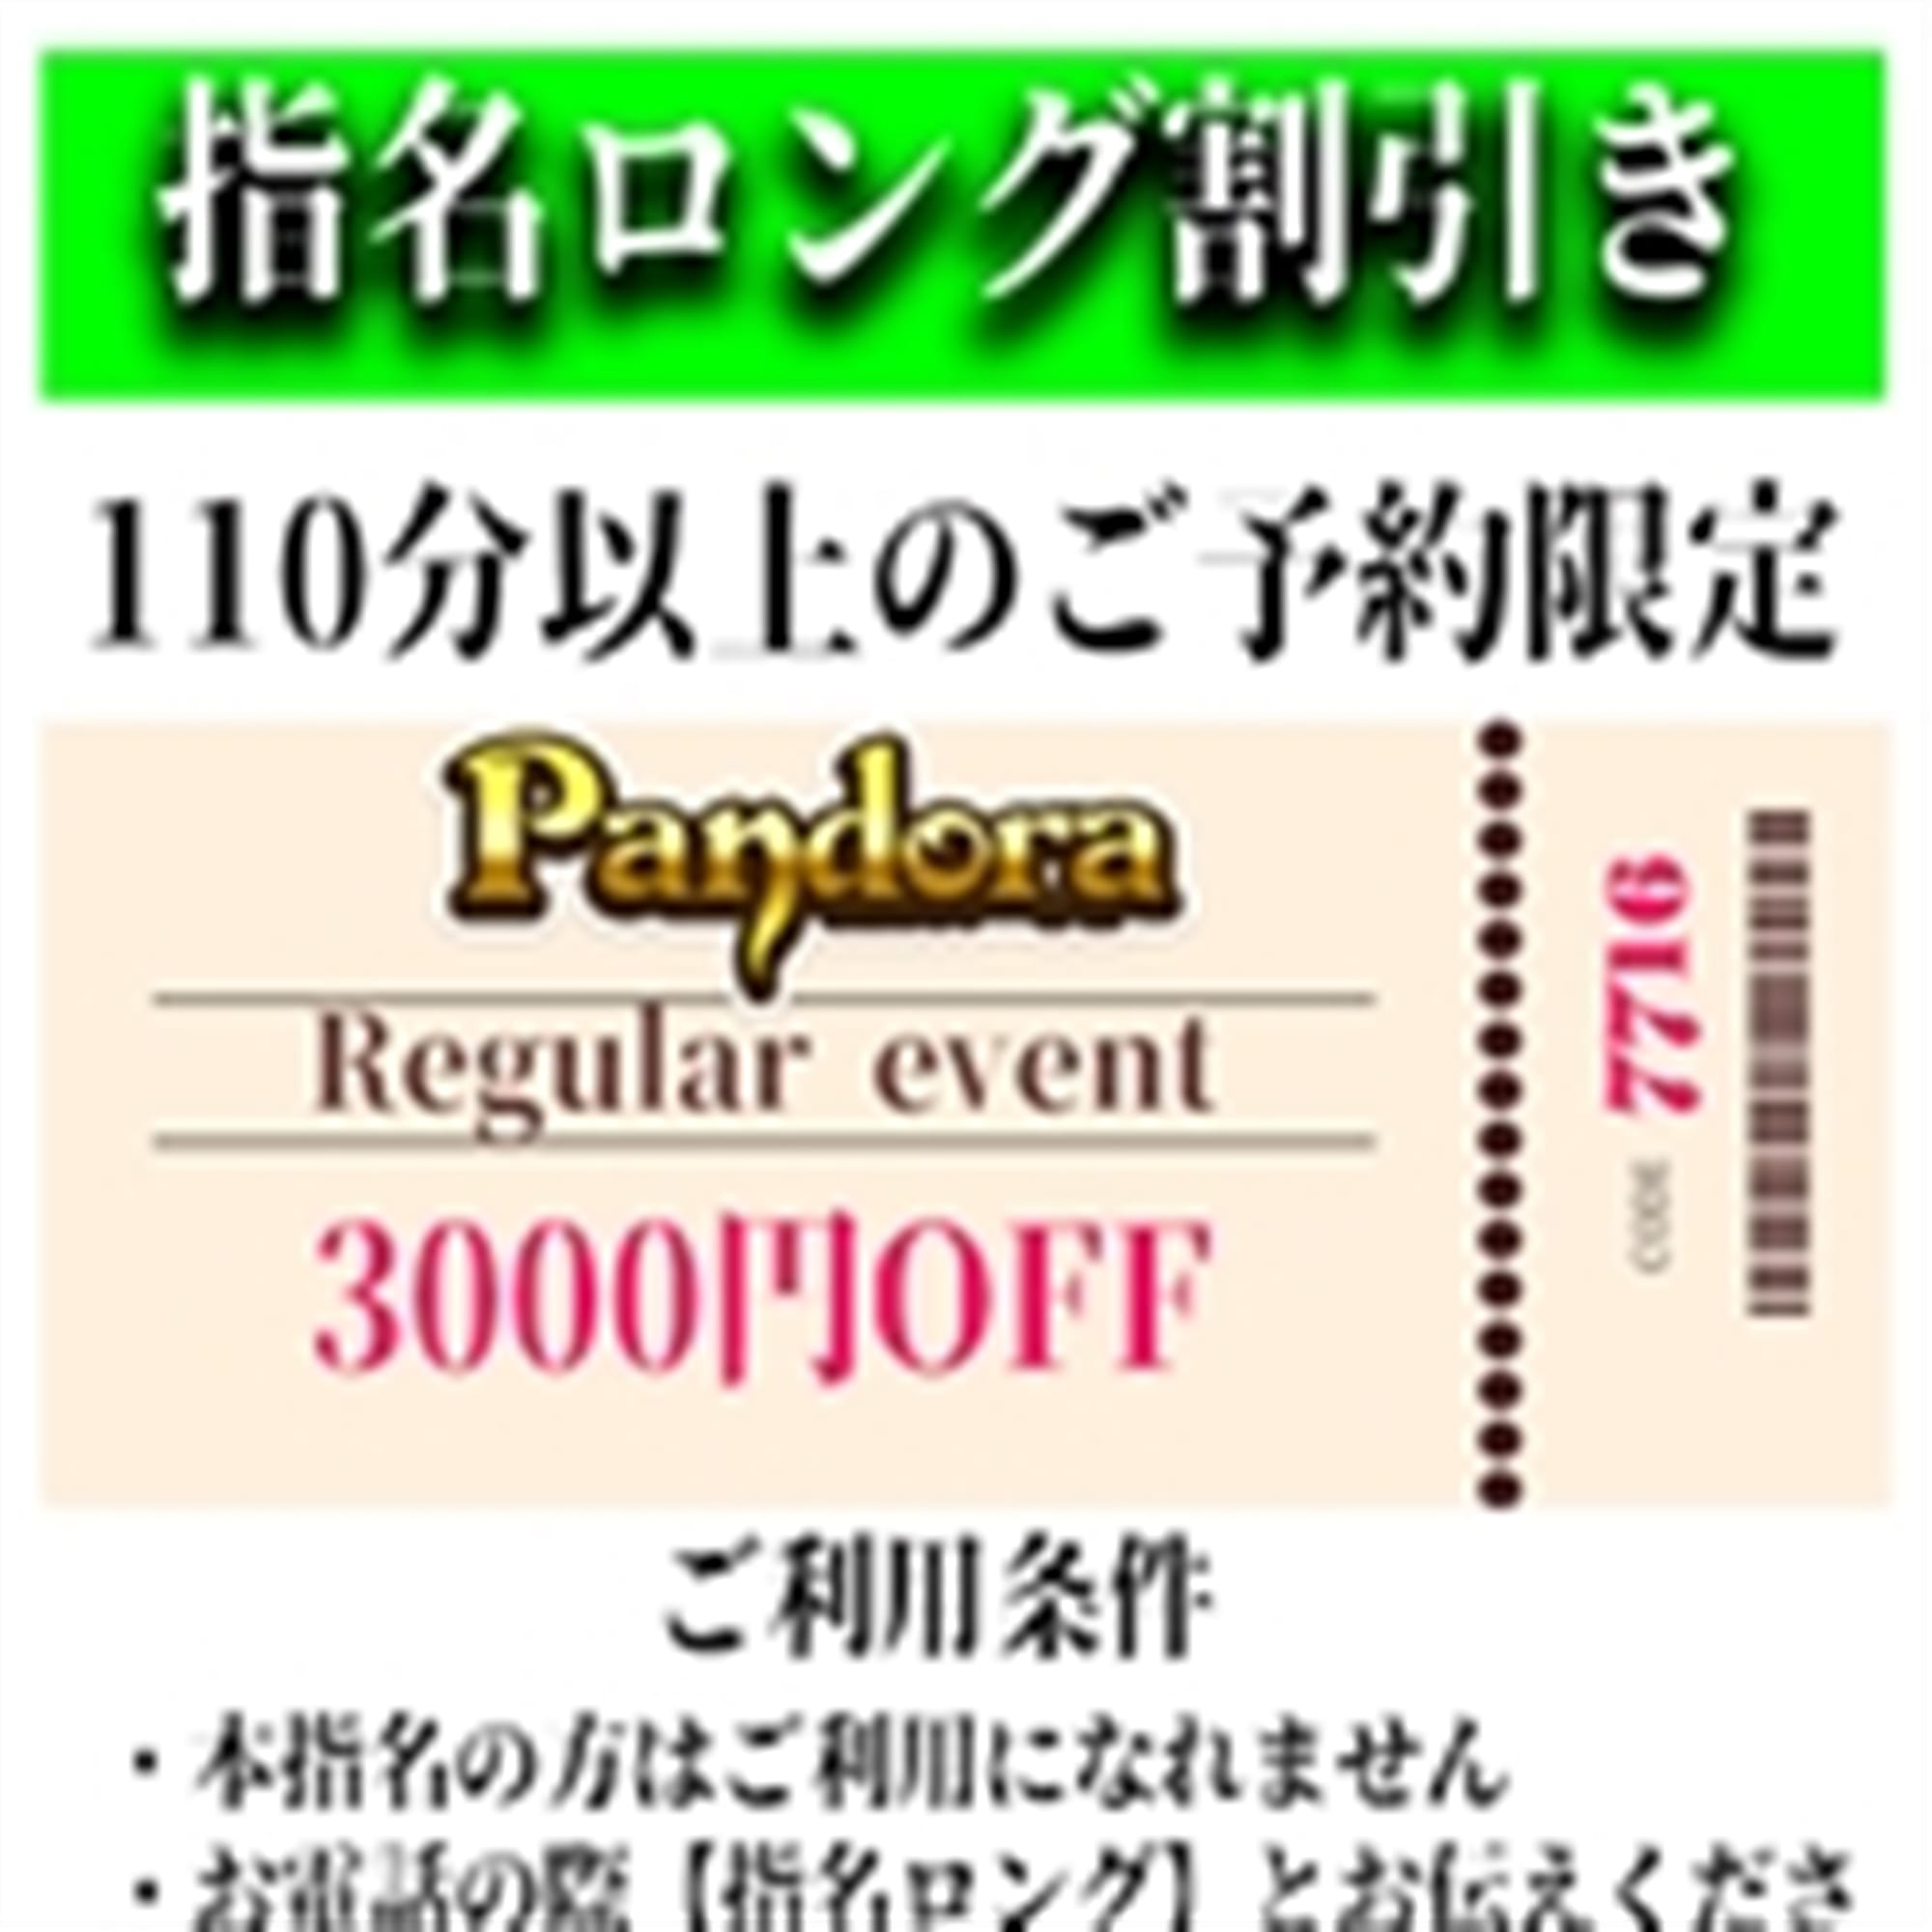 「ご指名のお客様も遊べるロングコース割引」04/20(土) 12:31 | Pandora(パンドラ)新潟のお得なニュース